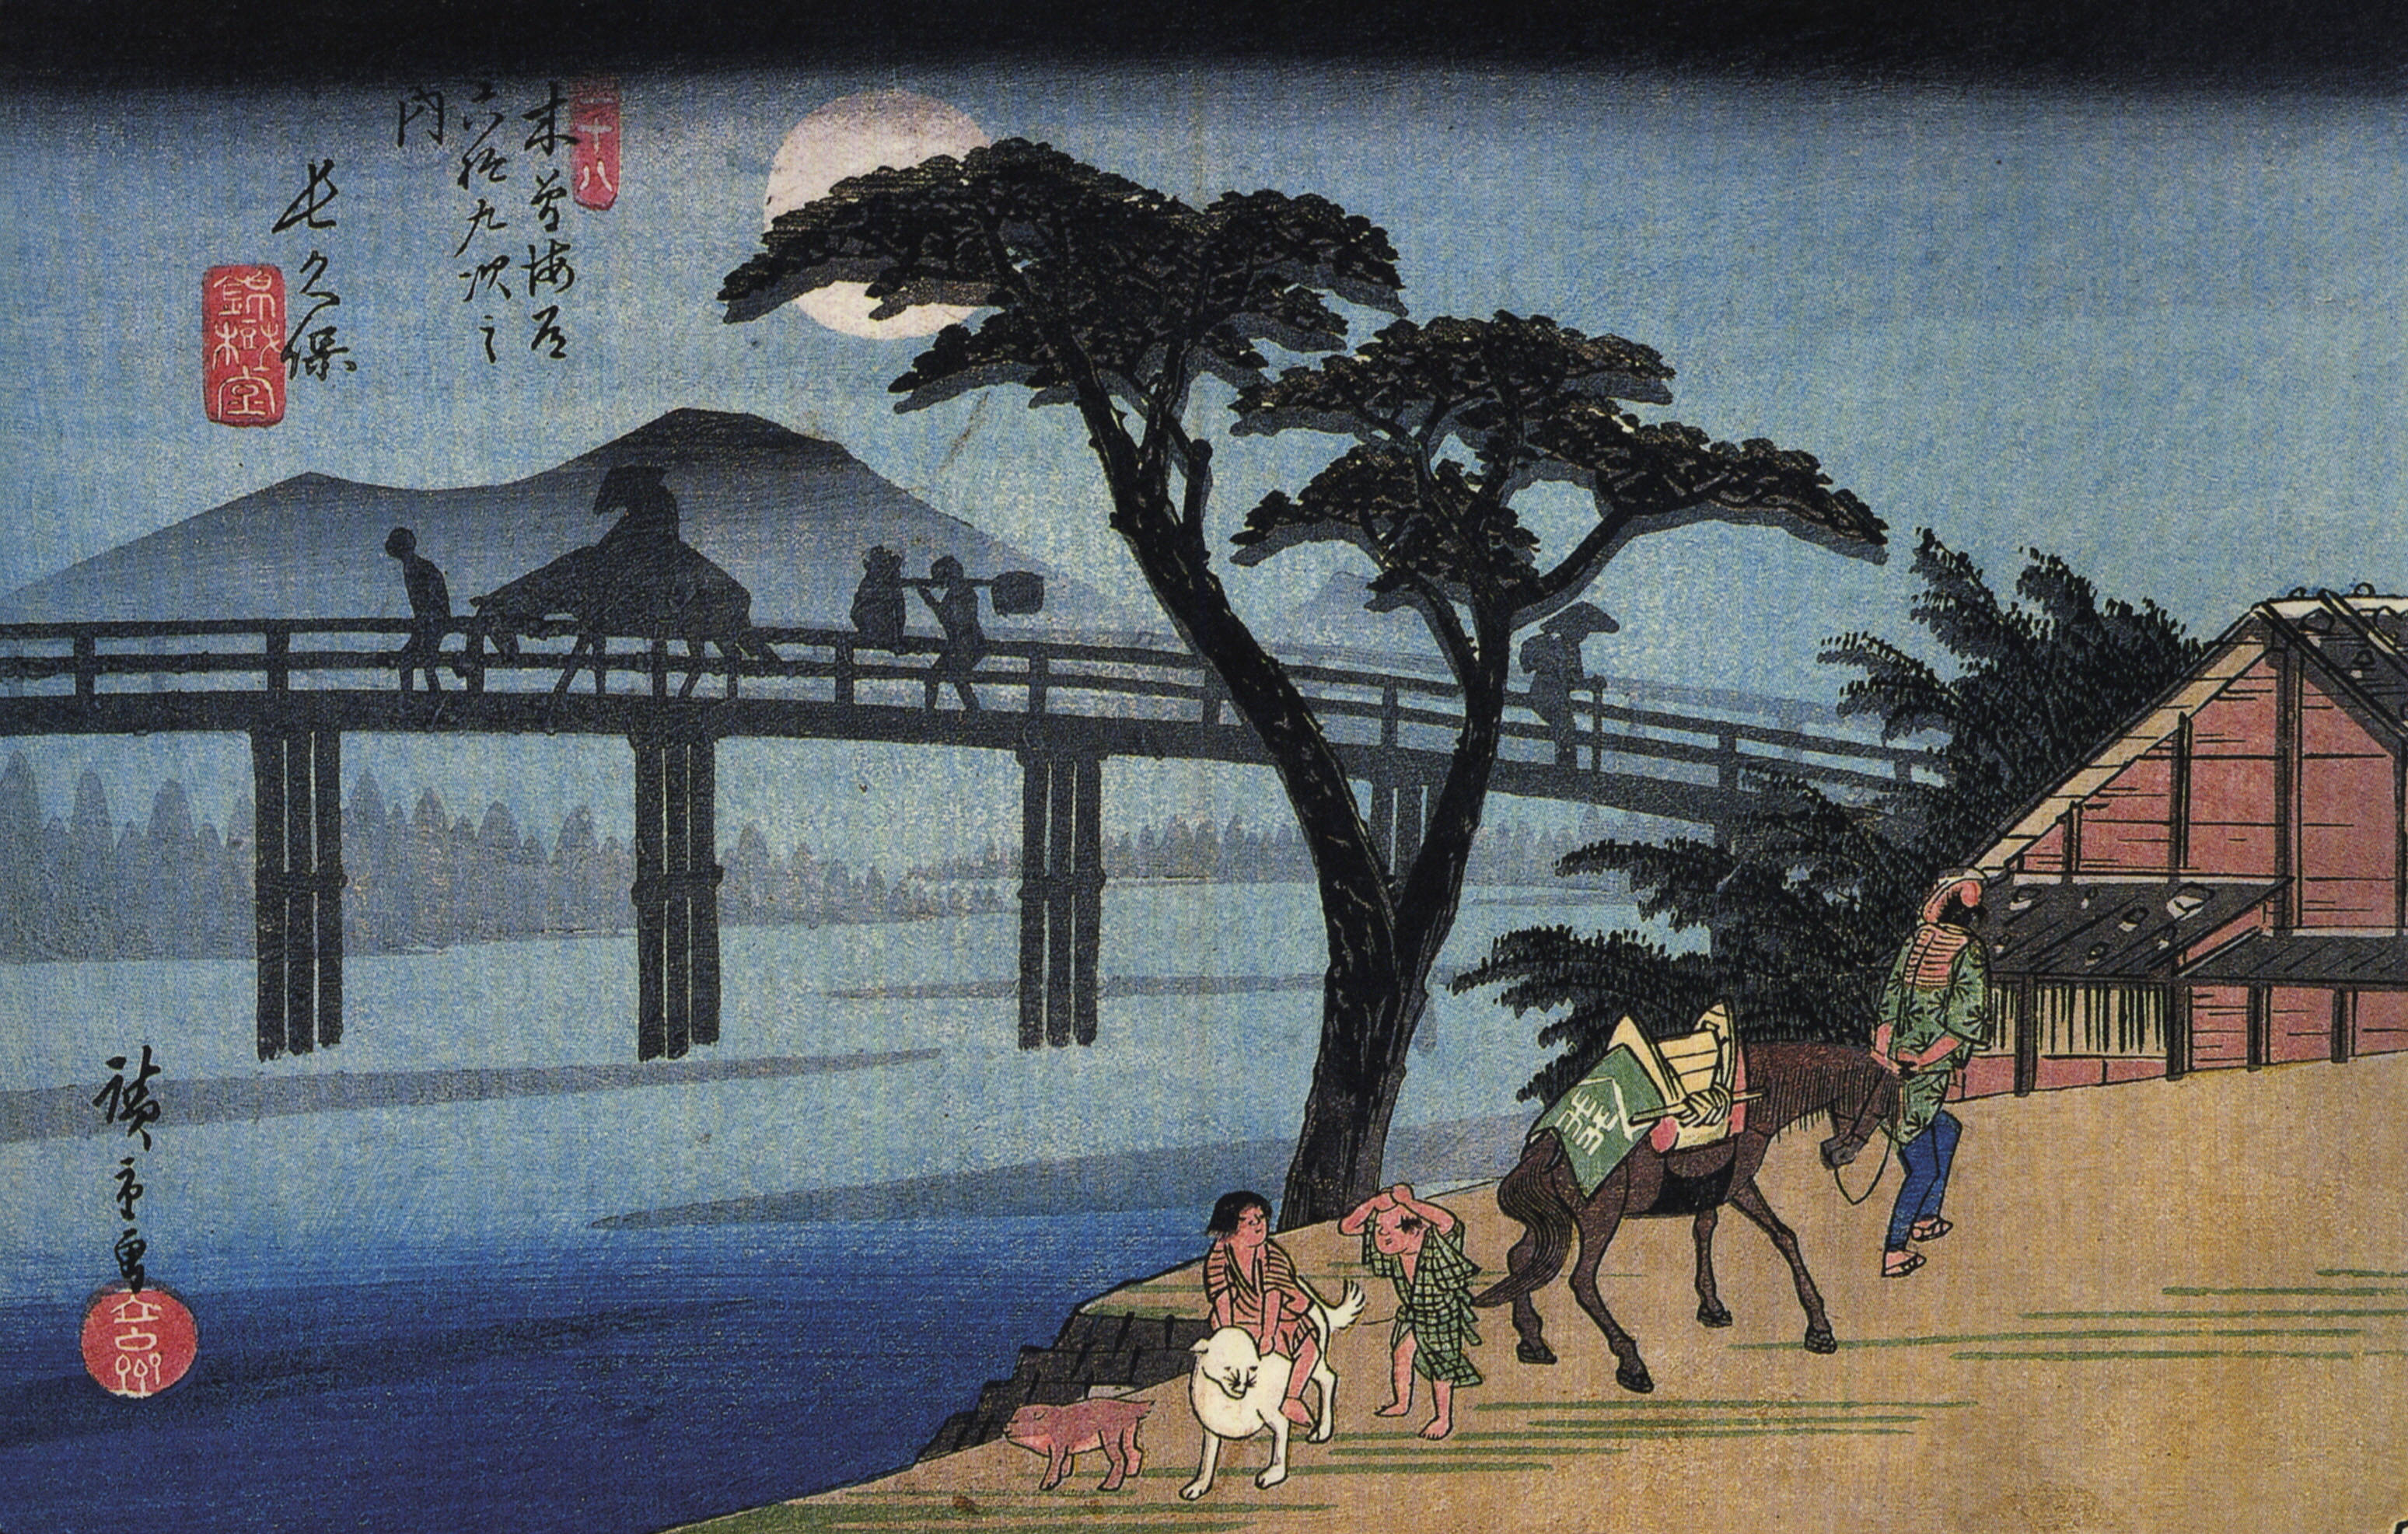 Mann auf Pferd beim Überqueren einer Brücke by  Hiroshige - 1834-1842 - 18.3 x 25.6 cm Library of Congress